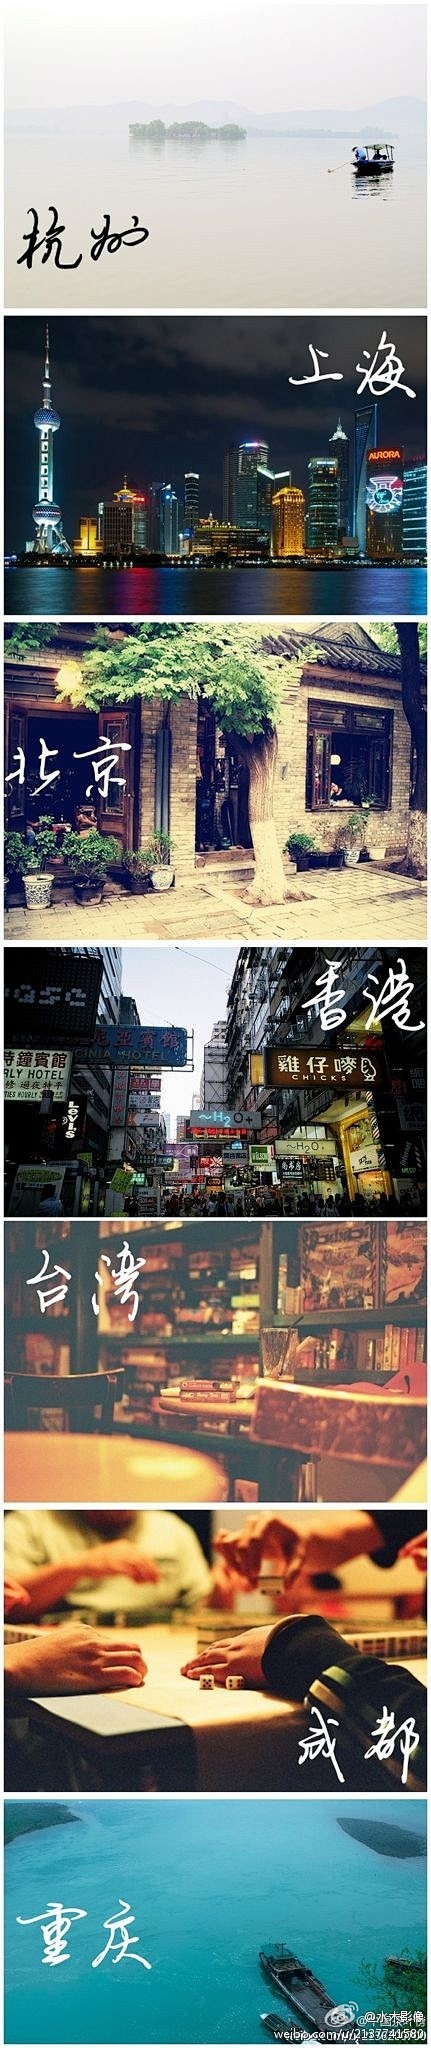 水木影像：城市茶印象：茶道+西湖=杭州悠...